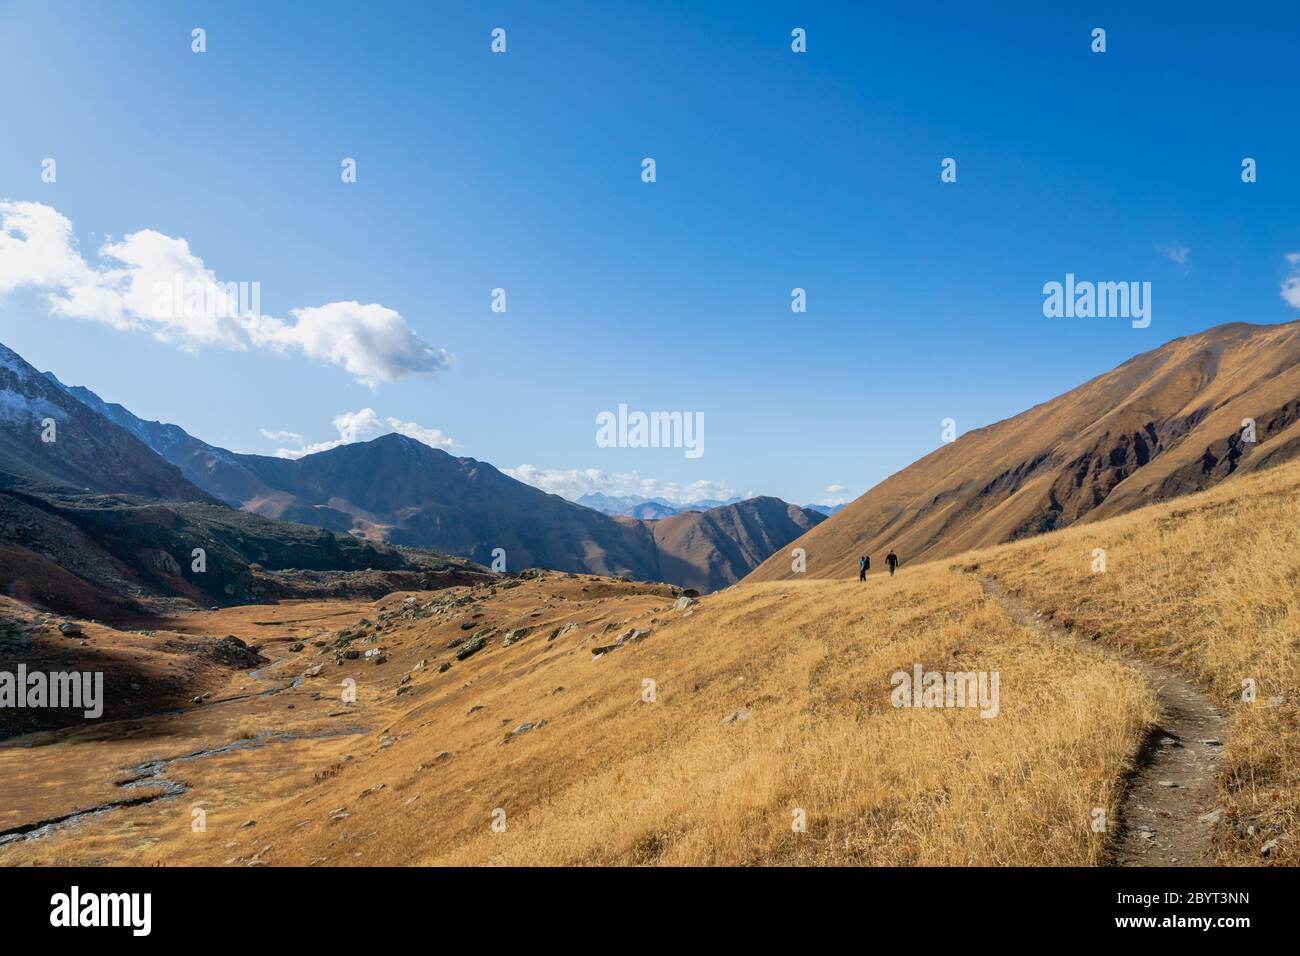 Spectaculaire paysage de randonnée en montagne dans la région de Juta trekking paysage en automne - trekking populaire dans les montagnes du Caucase, région de Kazbegi, Géorgie. Banque D'Images